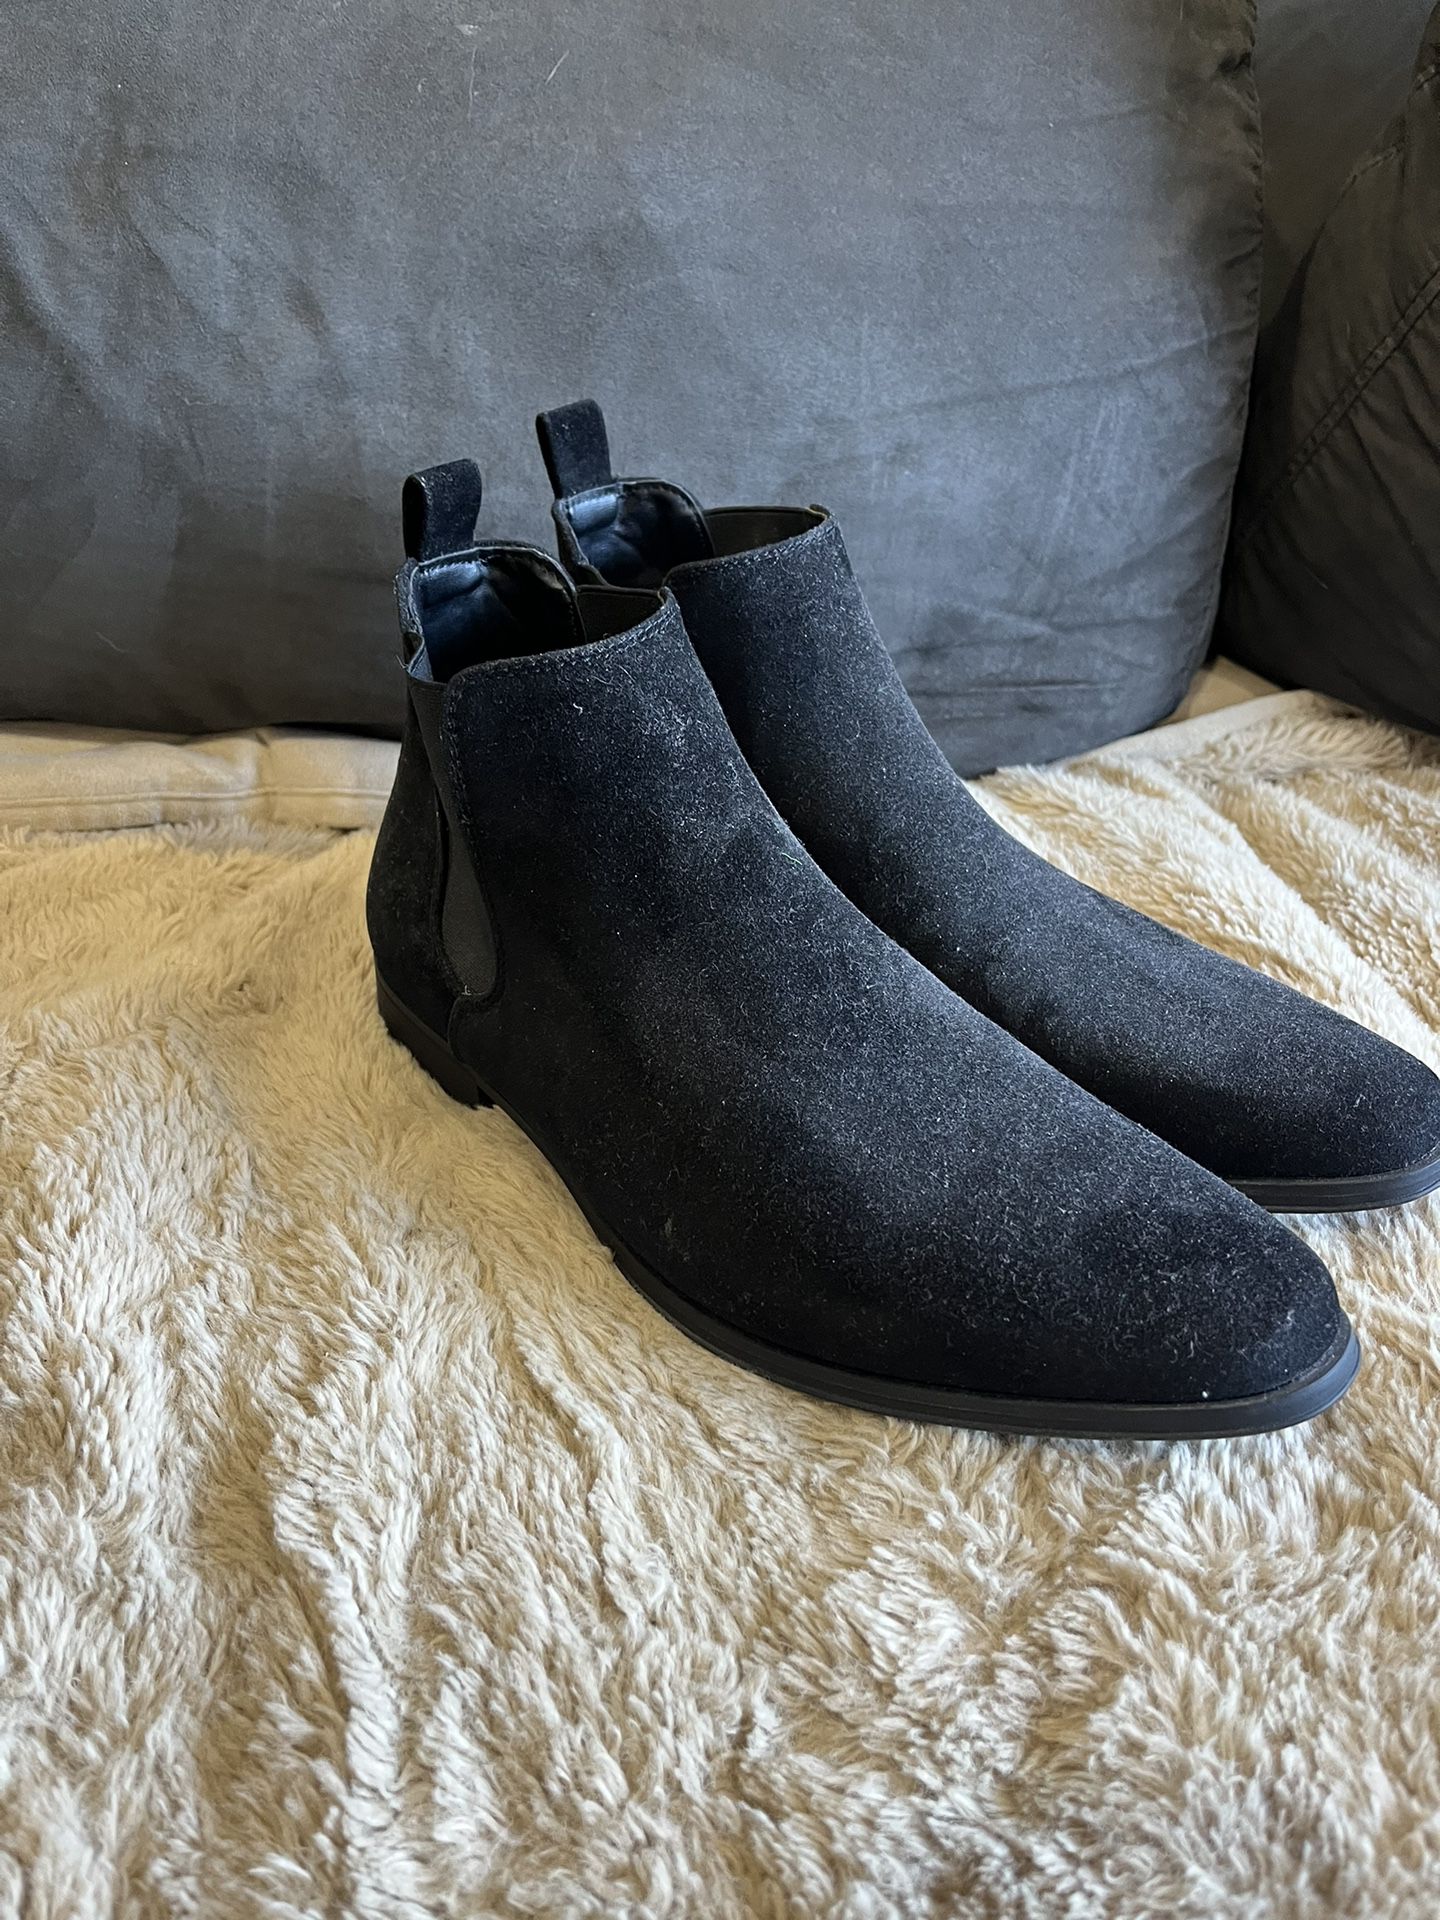 Black Men’s Chelsea Boots Size 9